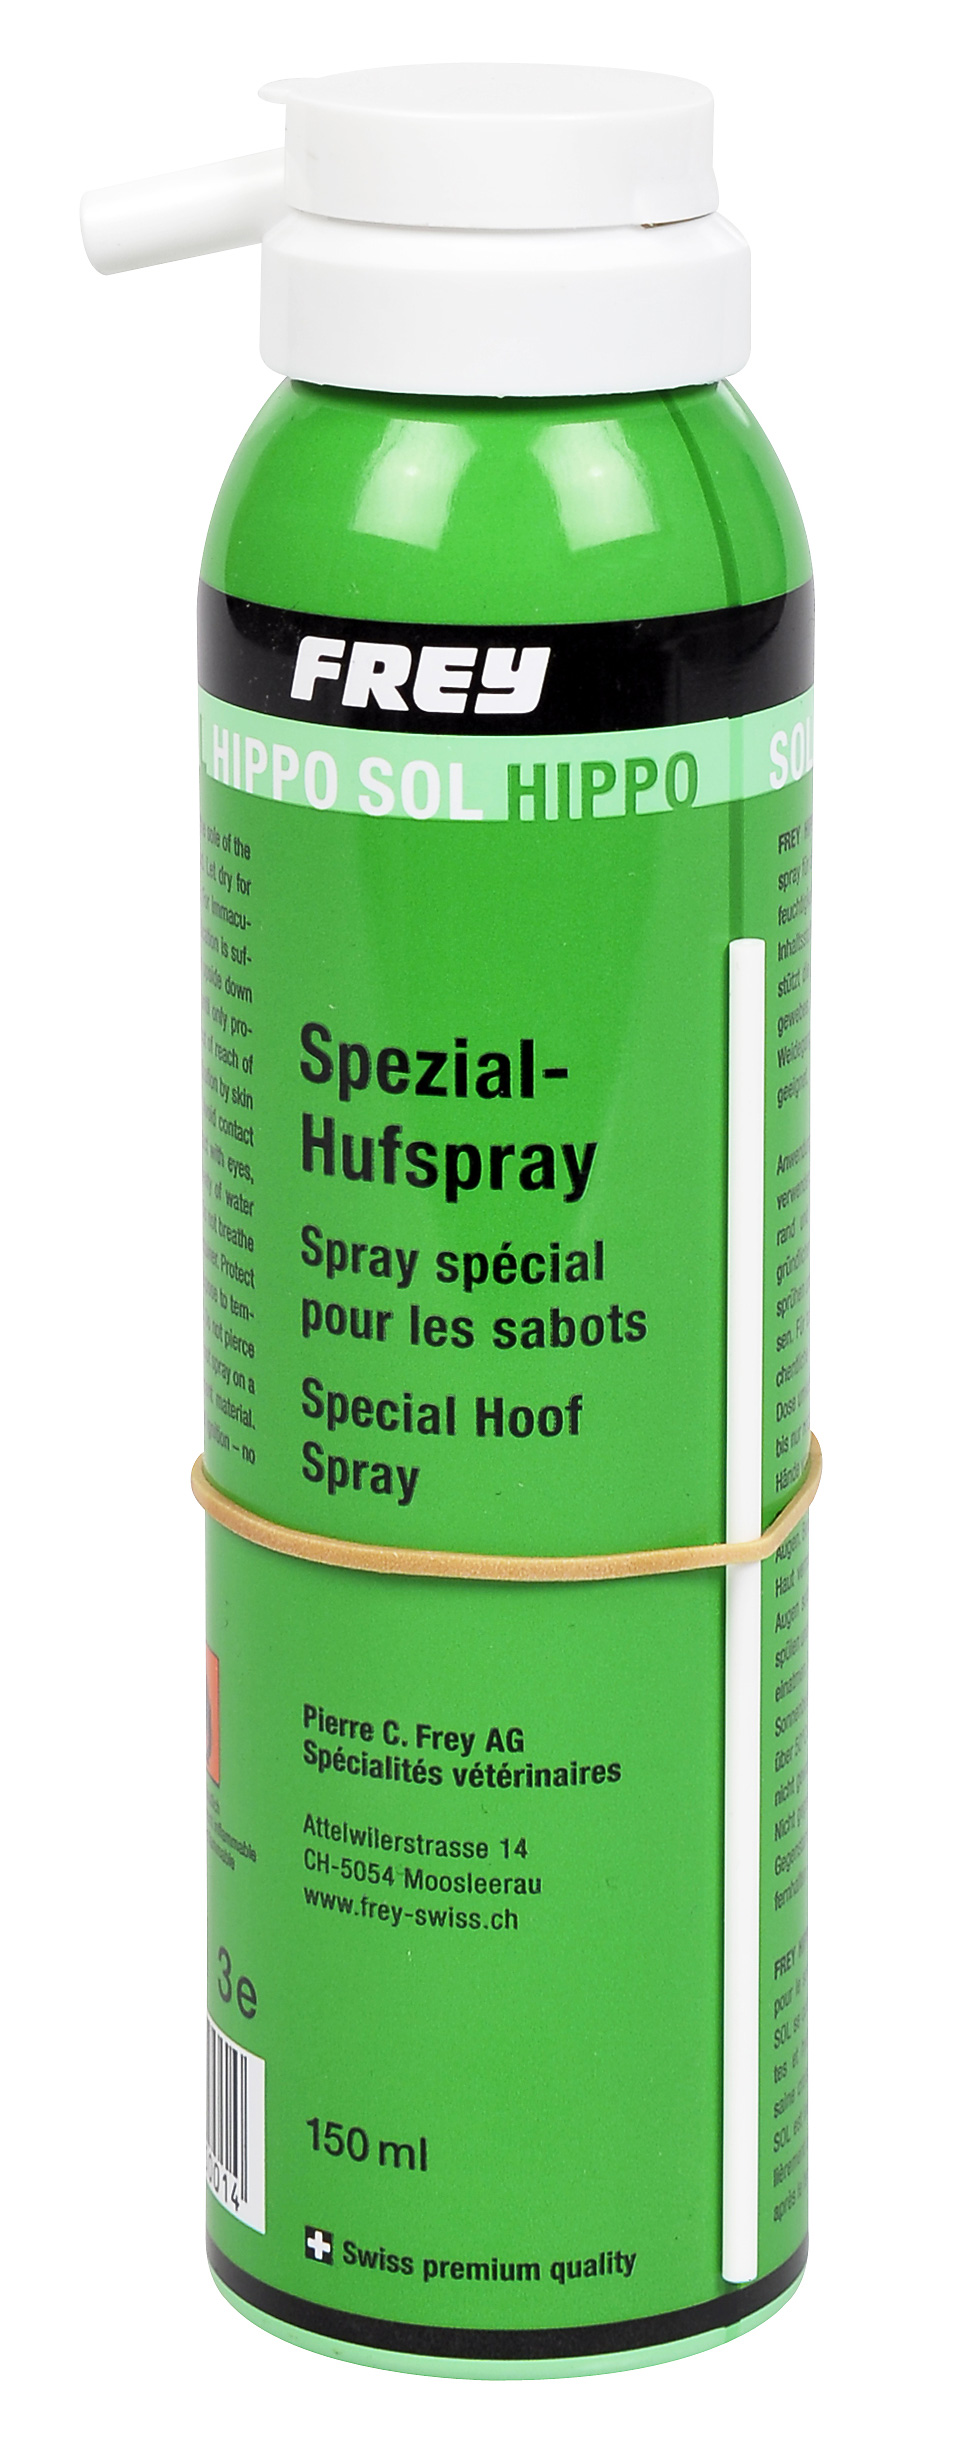 Frey - Hippo Sol - Spezial-Hufspray  gegen Strahlfäule